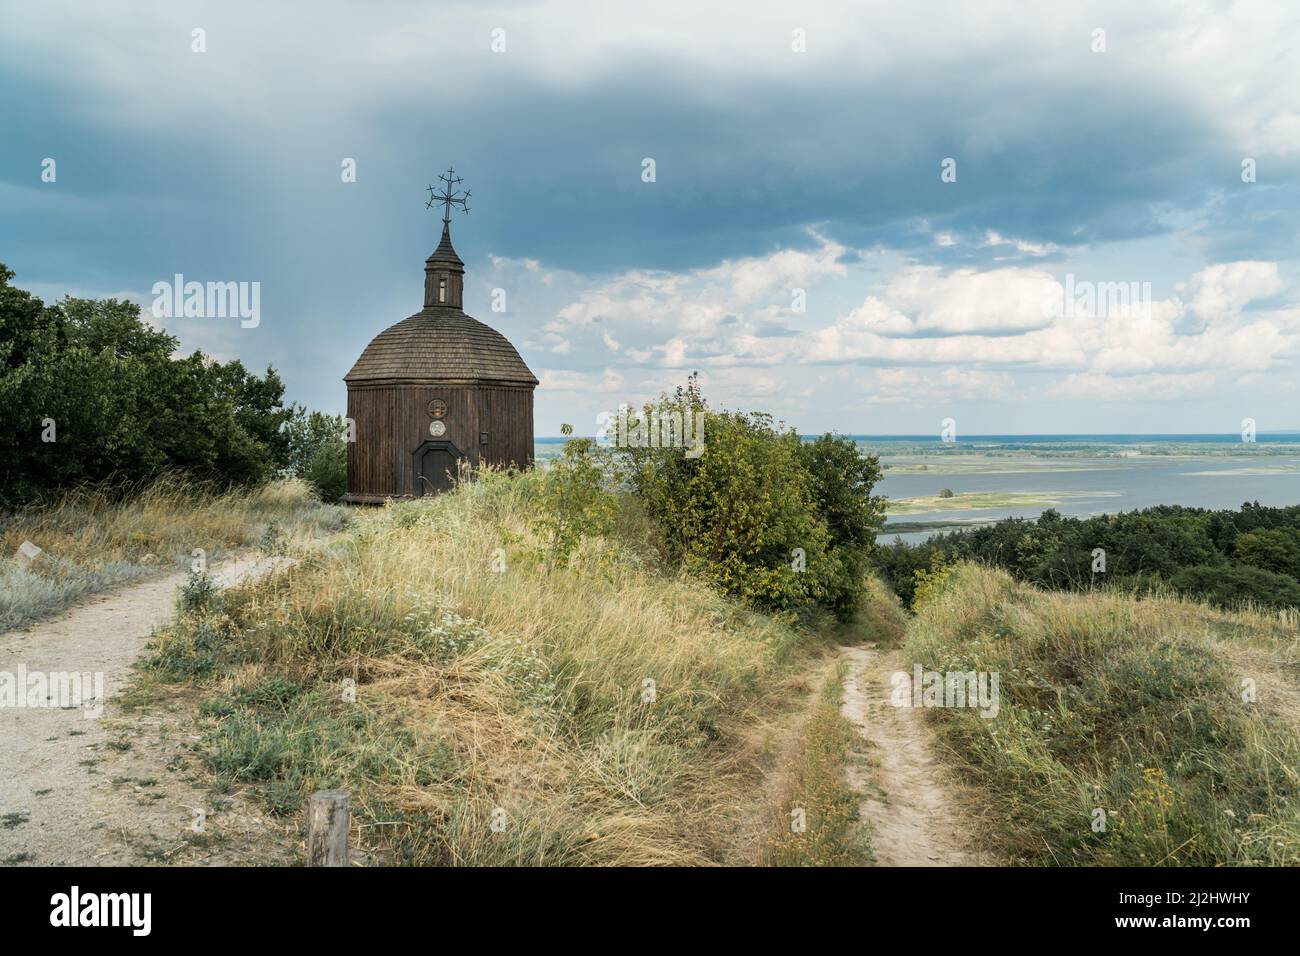 Paysage d'une petite église en bois sur une colline avec une vue magnifique sur une rivière Dneper à Vitachov (Vytachov), Ukraine. Excursions d'une journée à Kiev, Royaume-Uni Banque D'Images